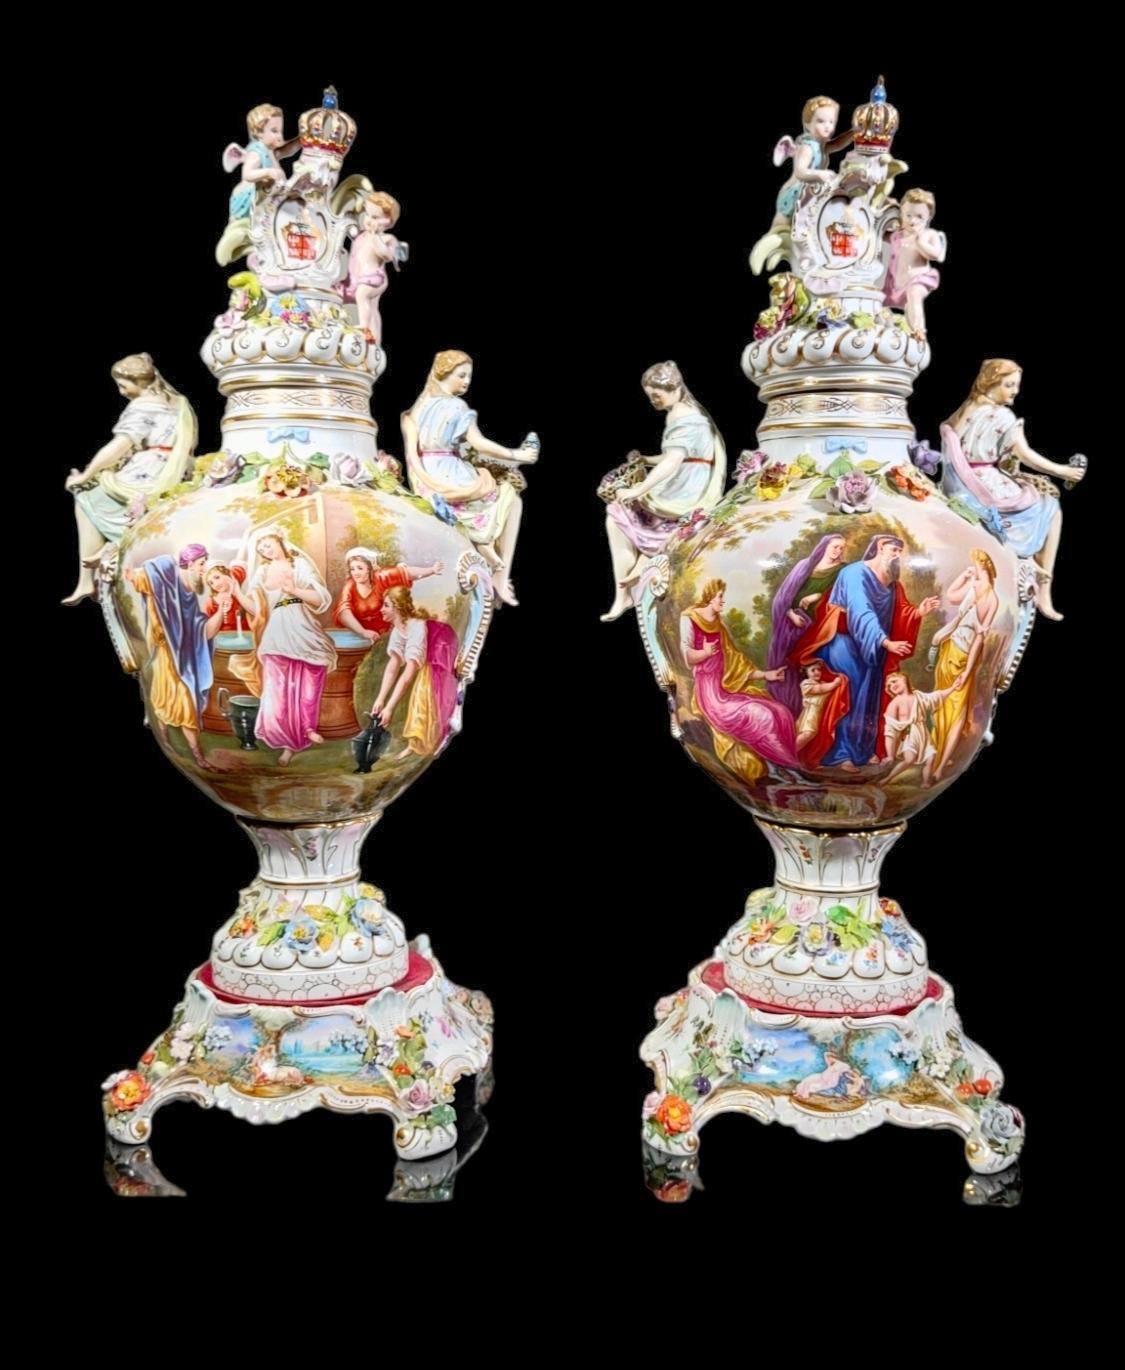 Ein Paar Carl Thieme-Sessel  Deutsche Porzellanvasen, Deckel und Sockel (potschappel)
CARL THIEME (DEUTSCH, 1816-1884) FÜR DRESDEN, VASEN AUS BEMALTEM PORZELLAN, DAS PAAR. Engel, die ein Wappenschild krönen und mit Blumen geschmückt sind, auf den